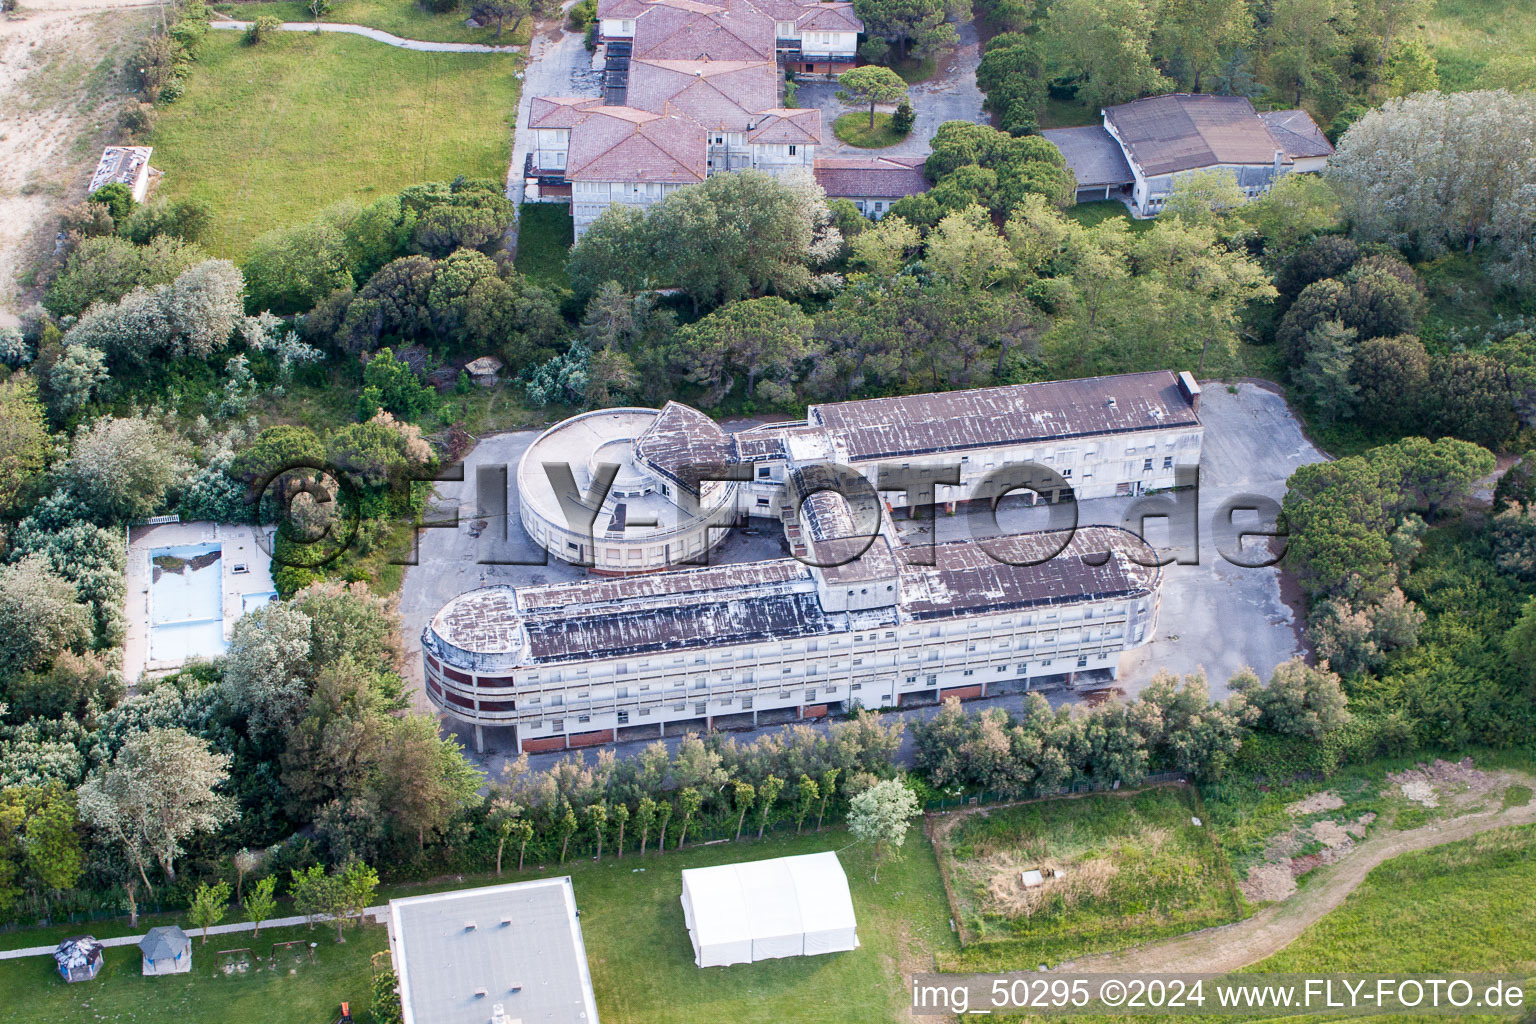 Luftbild von Verfallendes Gebäude des ehemaligen Familienerholungsheims ex Colonia La Nostra Famiglia am Strand der Adria in Duna Verde in Venetien, Italien